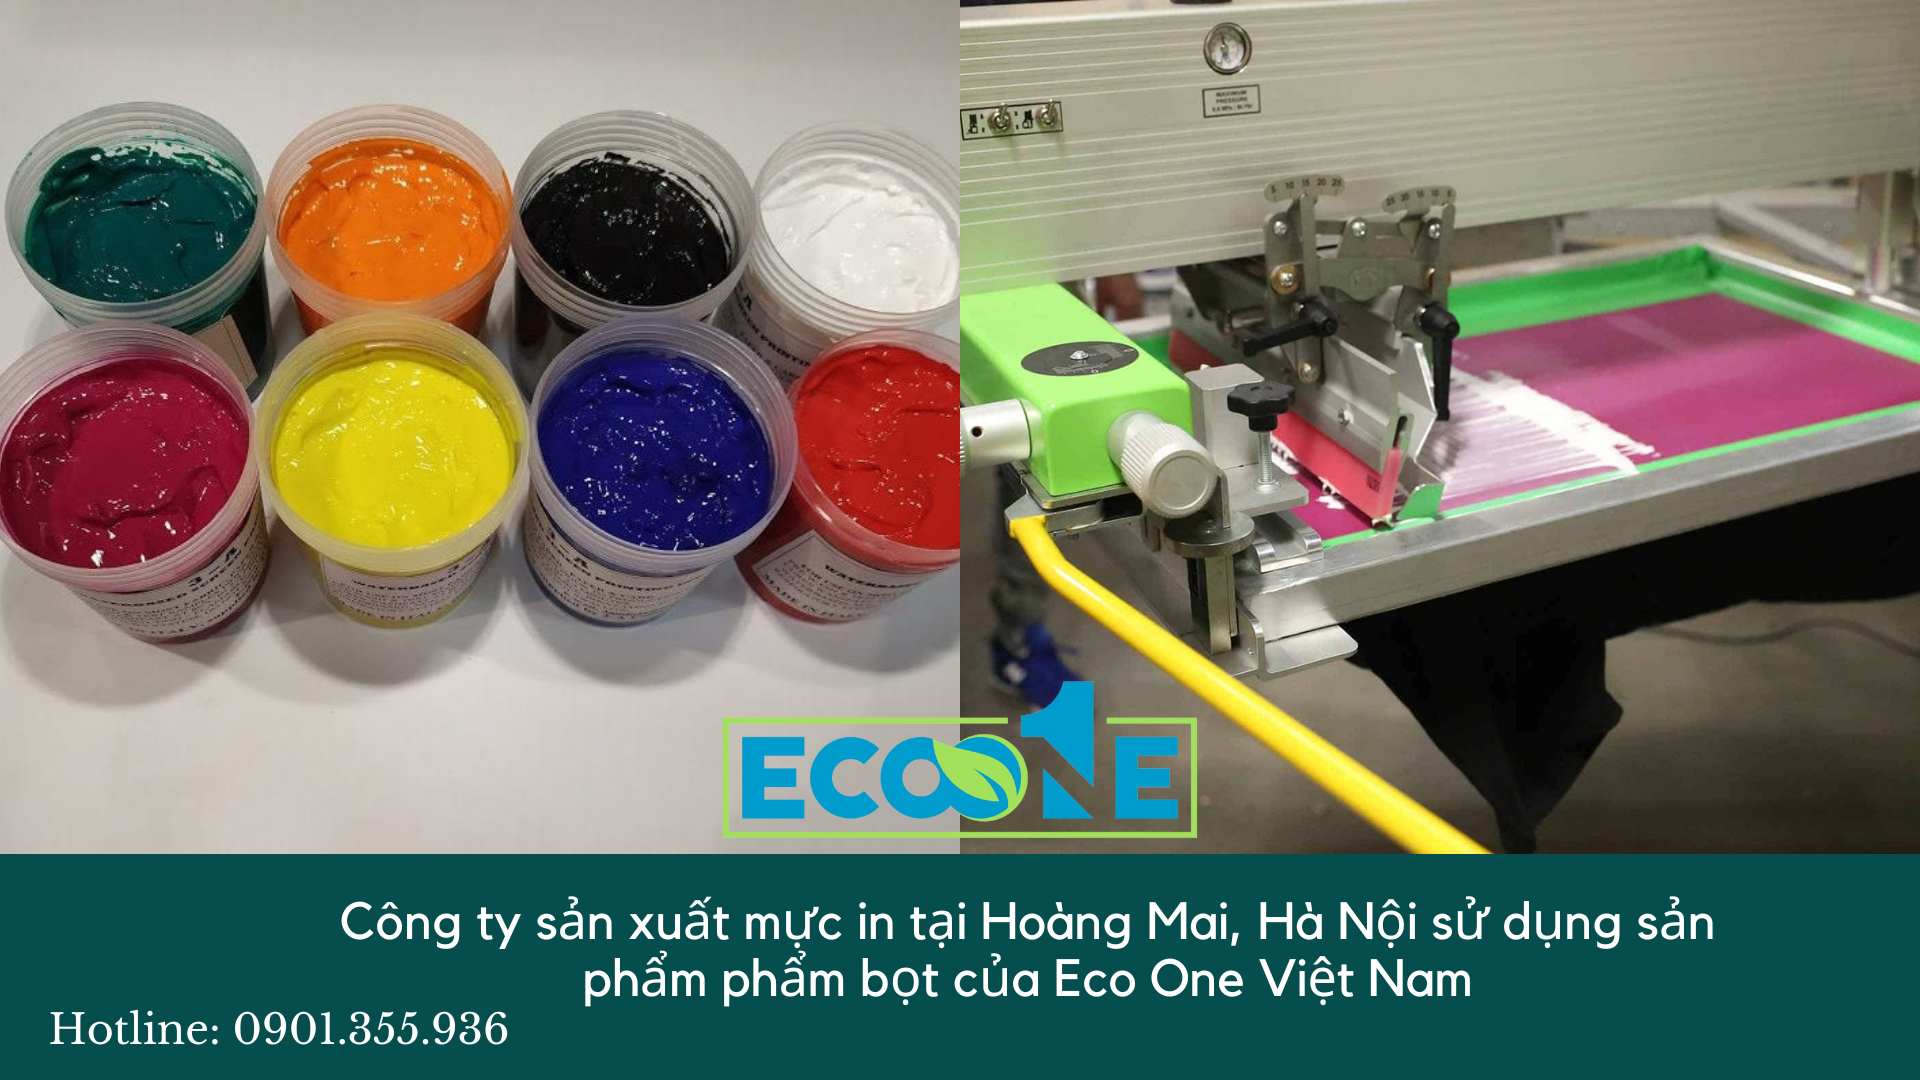 Công ty sản xuất mực in tại Hoàng Mai, Hà Nội sử dụng sản phẩm phẩm bọt của Eco One Việt Nam